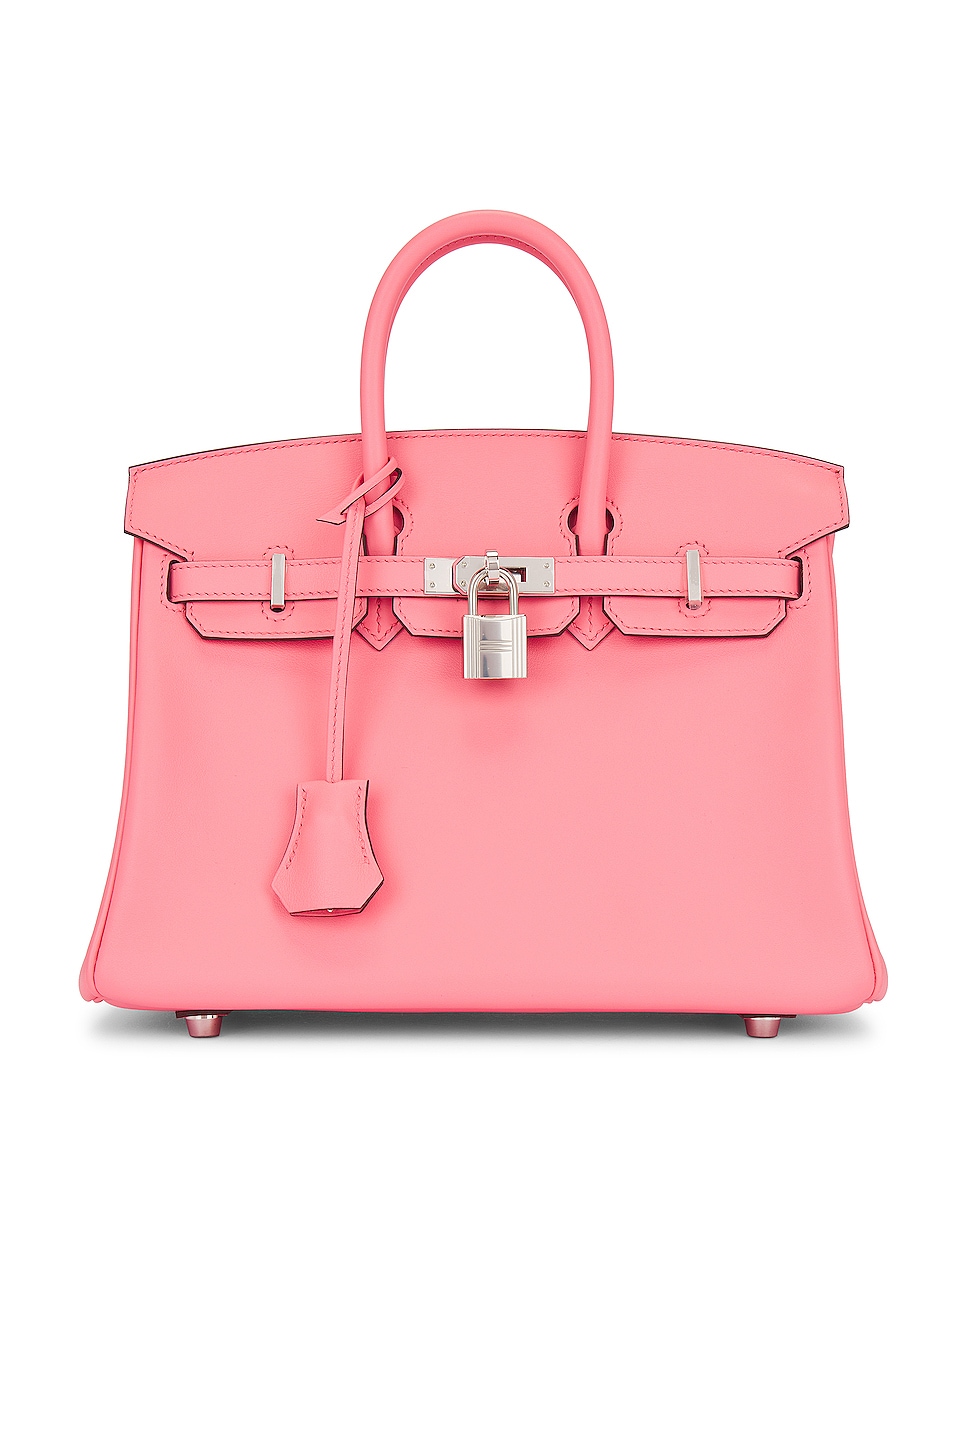 FWRD Renew Hermes Kelly 25 Handbag in Pink